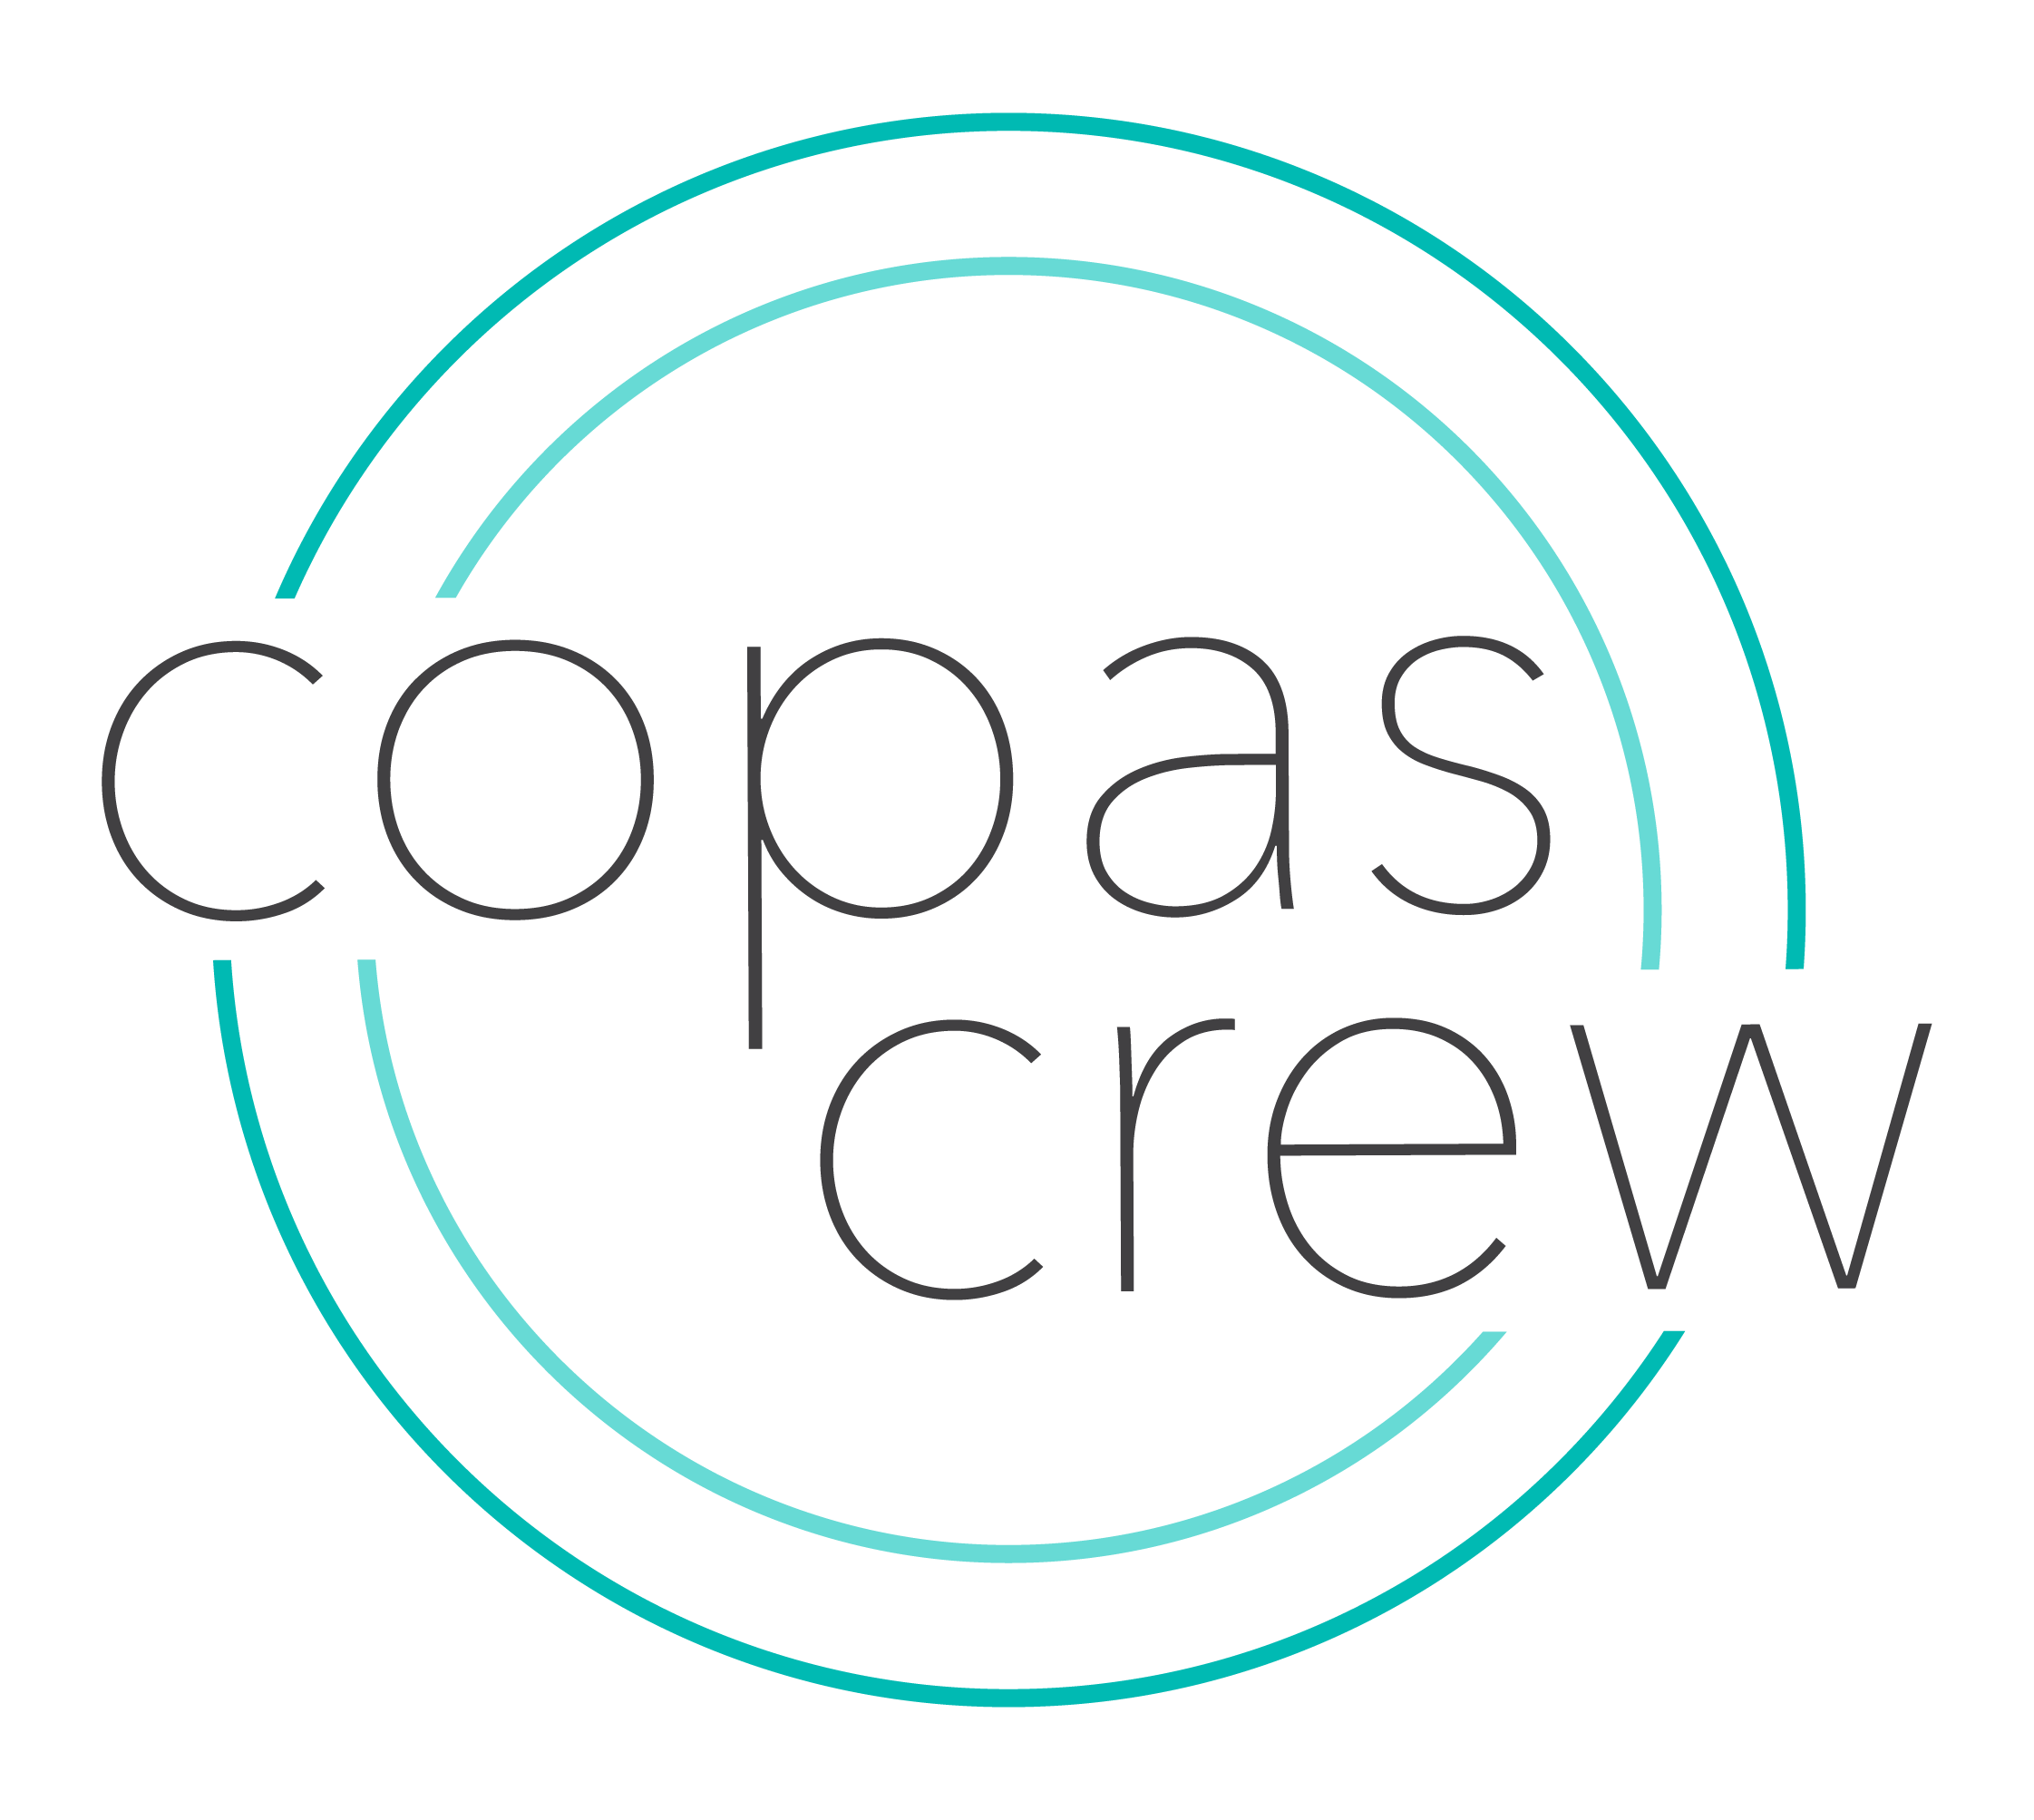 Copas Crew